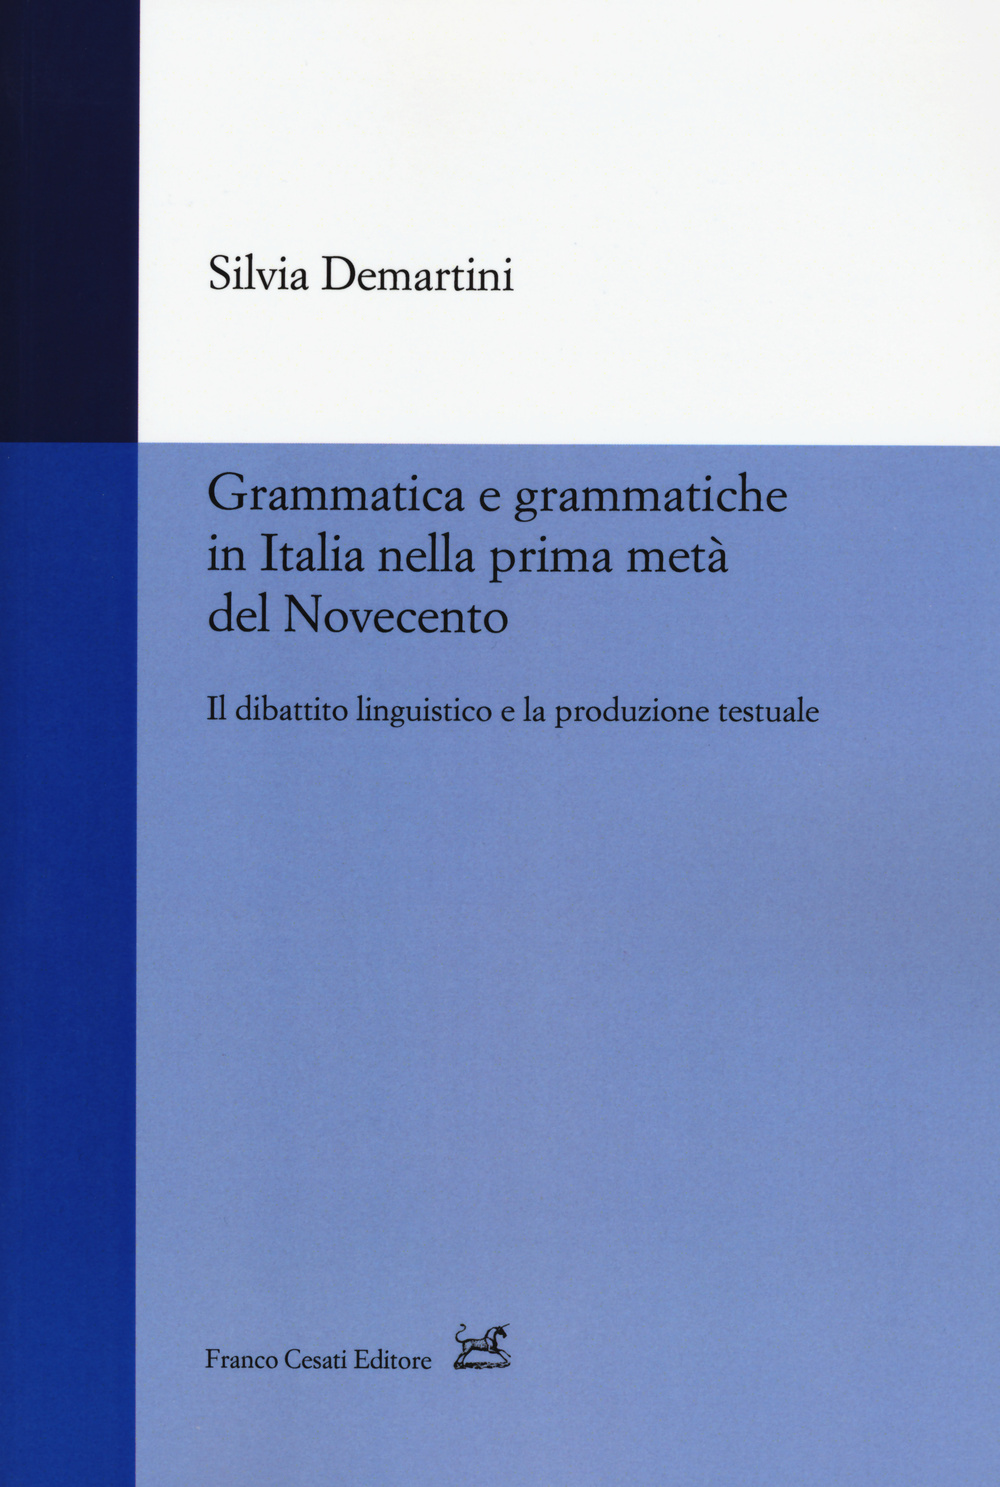 Grammatica e grammatiche in Italia nella prima metà del Novecento. Il dibattito linguistico e la produzione testuale